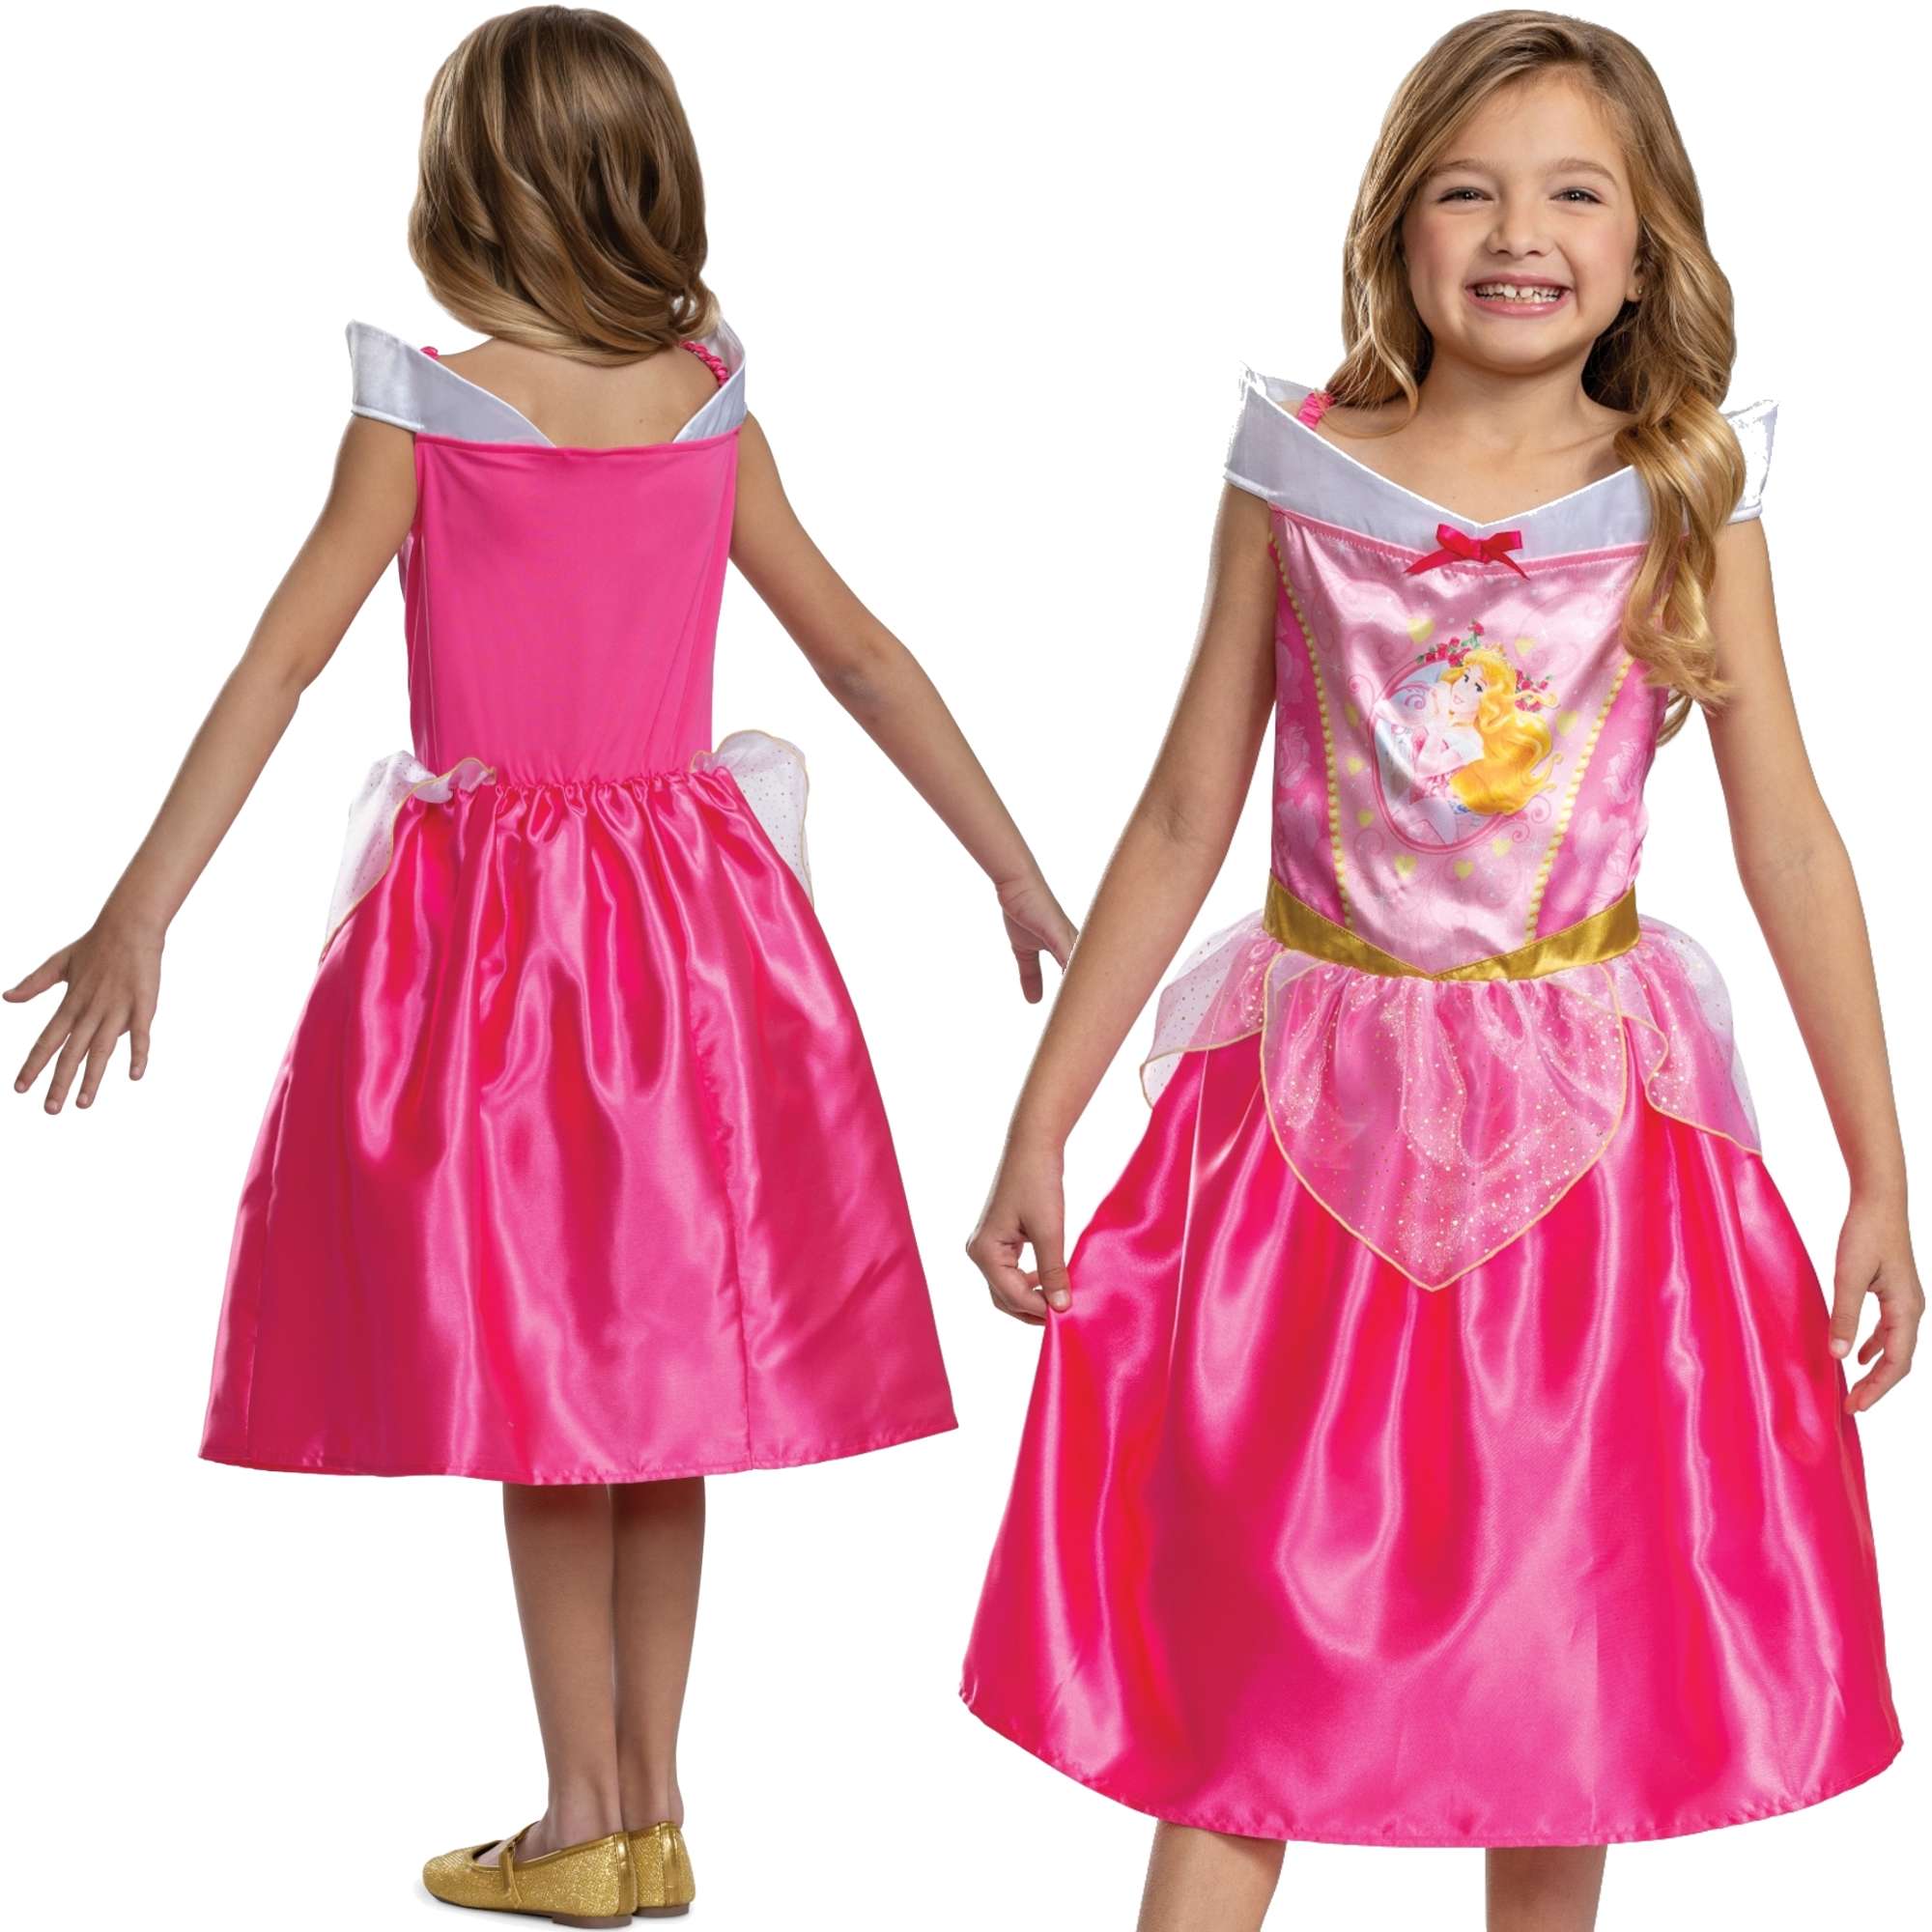 Strj karnawaowy Disney dla dziewczynki pica krlewna Aurora kostium przebranie 110-122 cm